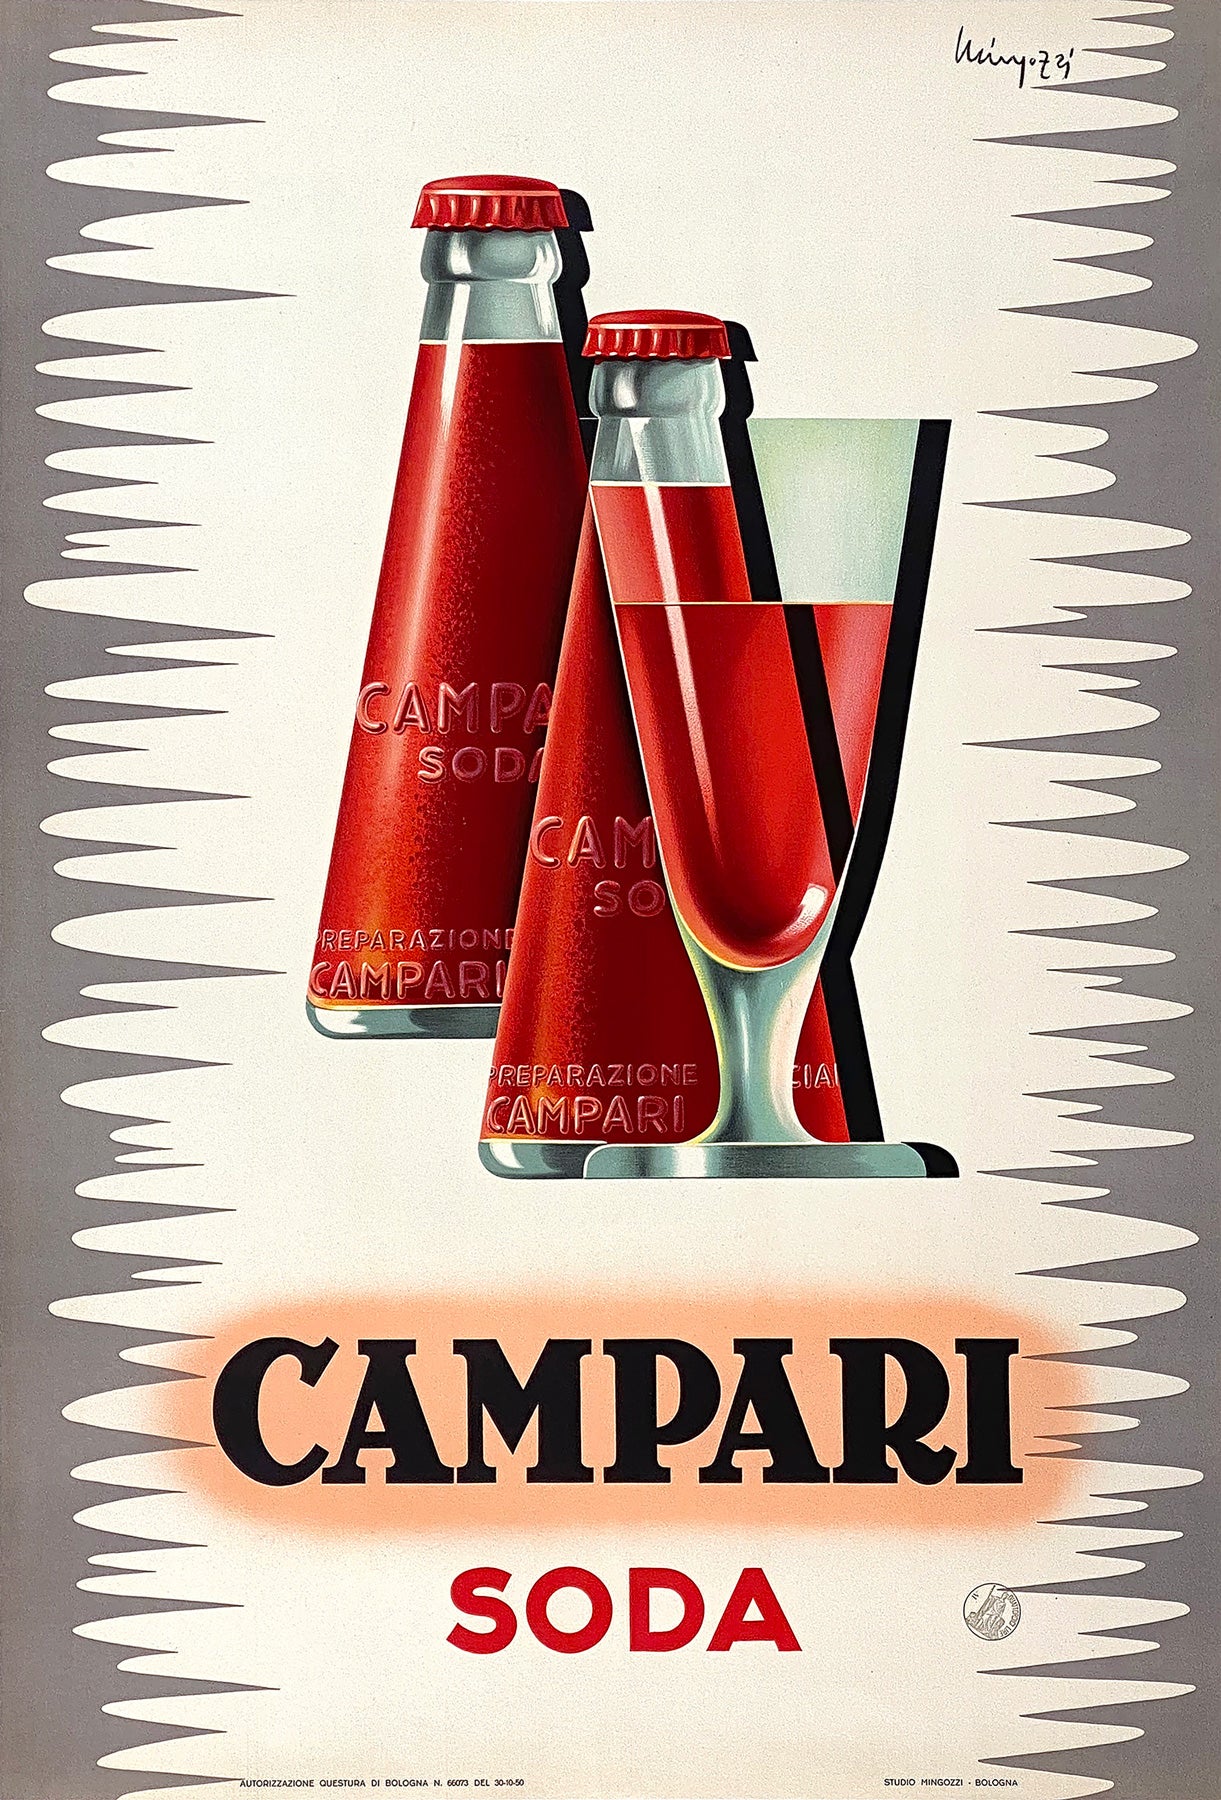 Campari Soda 1950 Vintage Italian Alcohol Adversting Poster, Giovanni Mingozzi